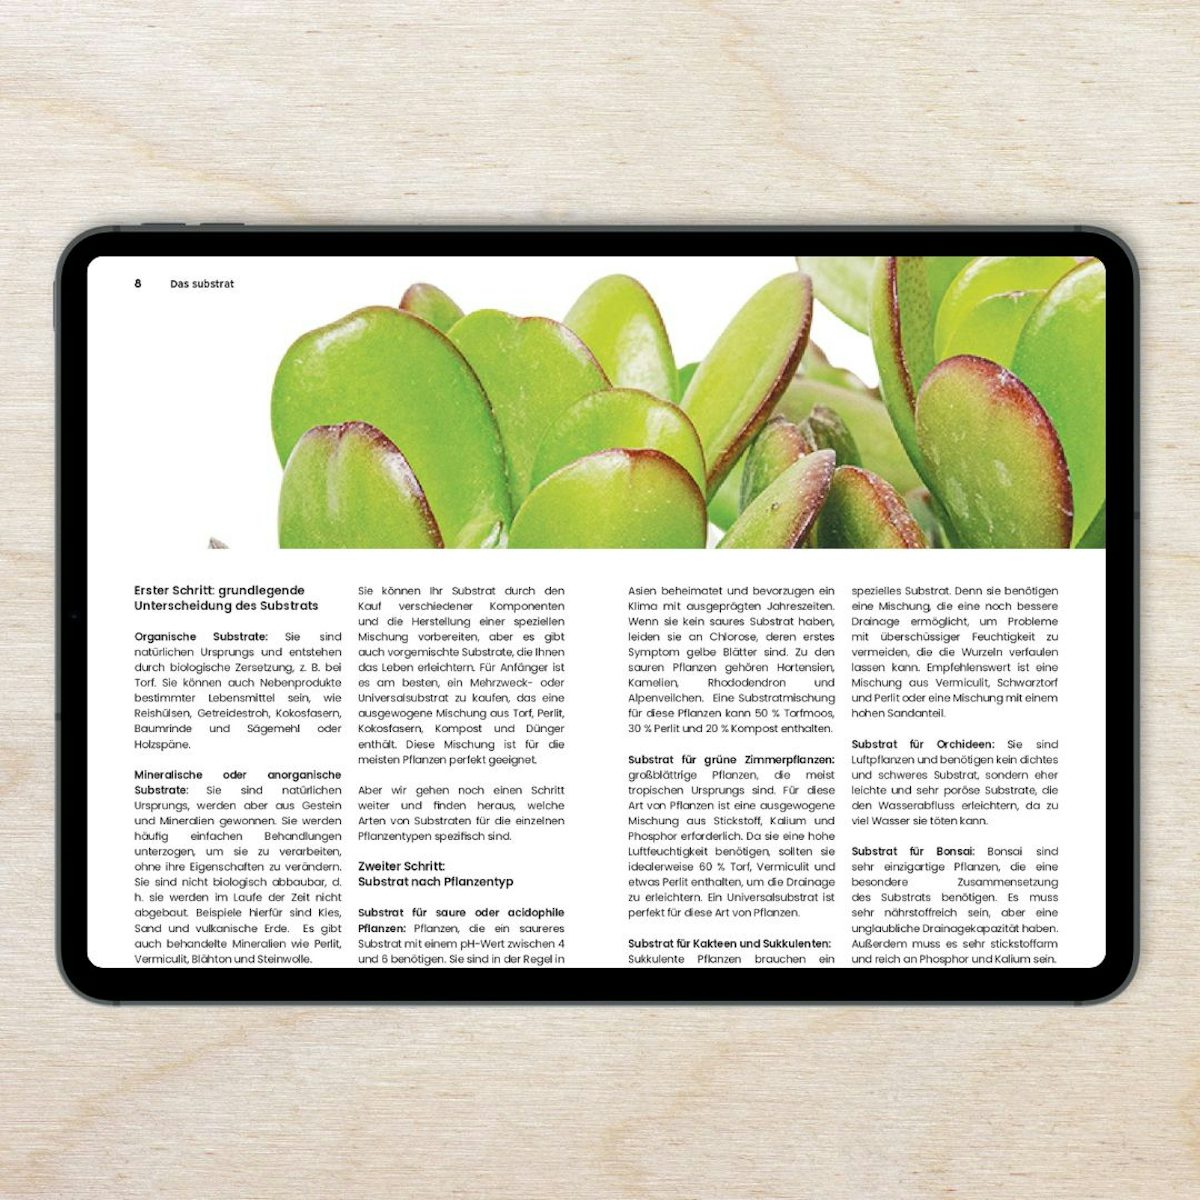 Электронная книга - От убийцы растений до эксперта